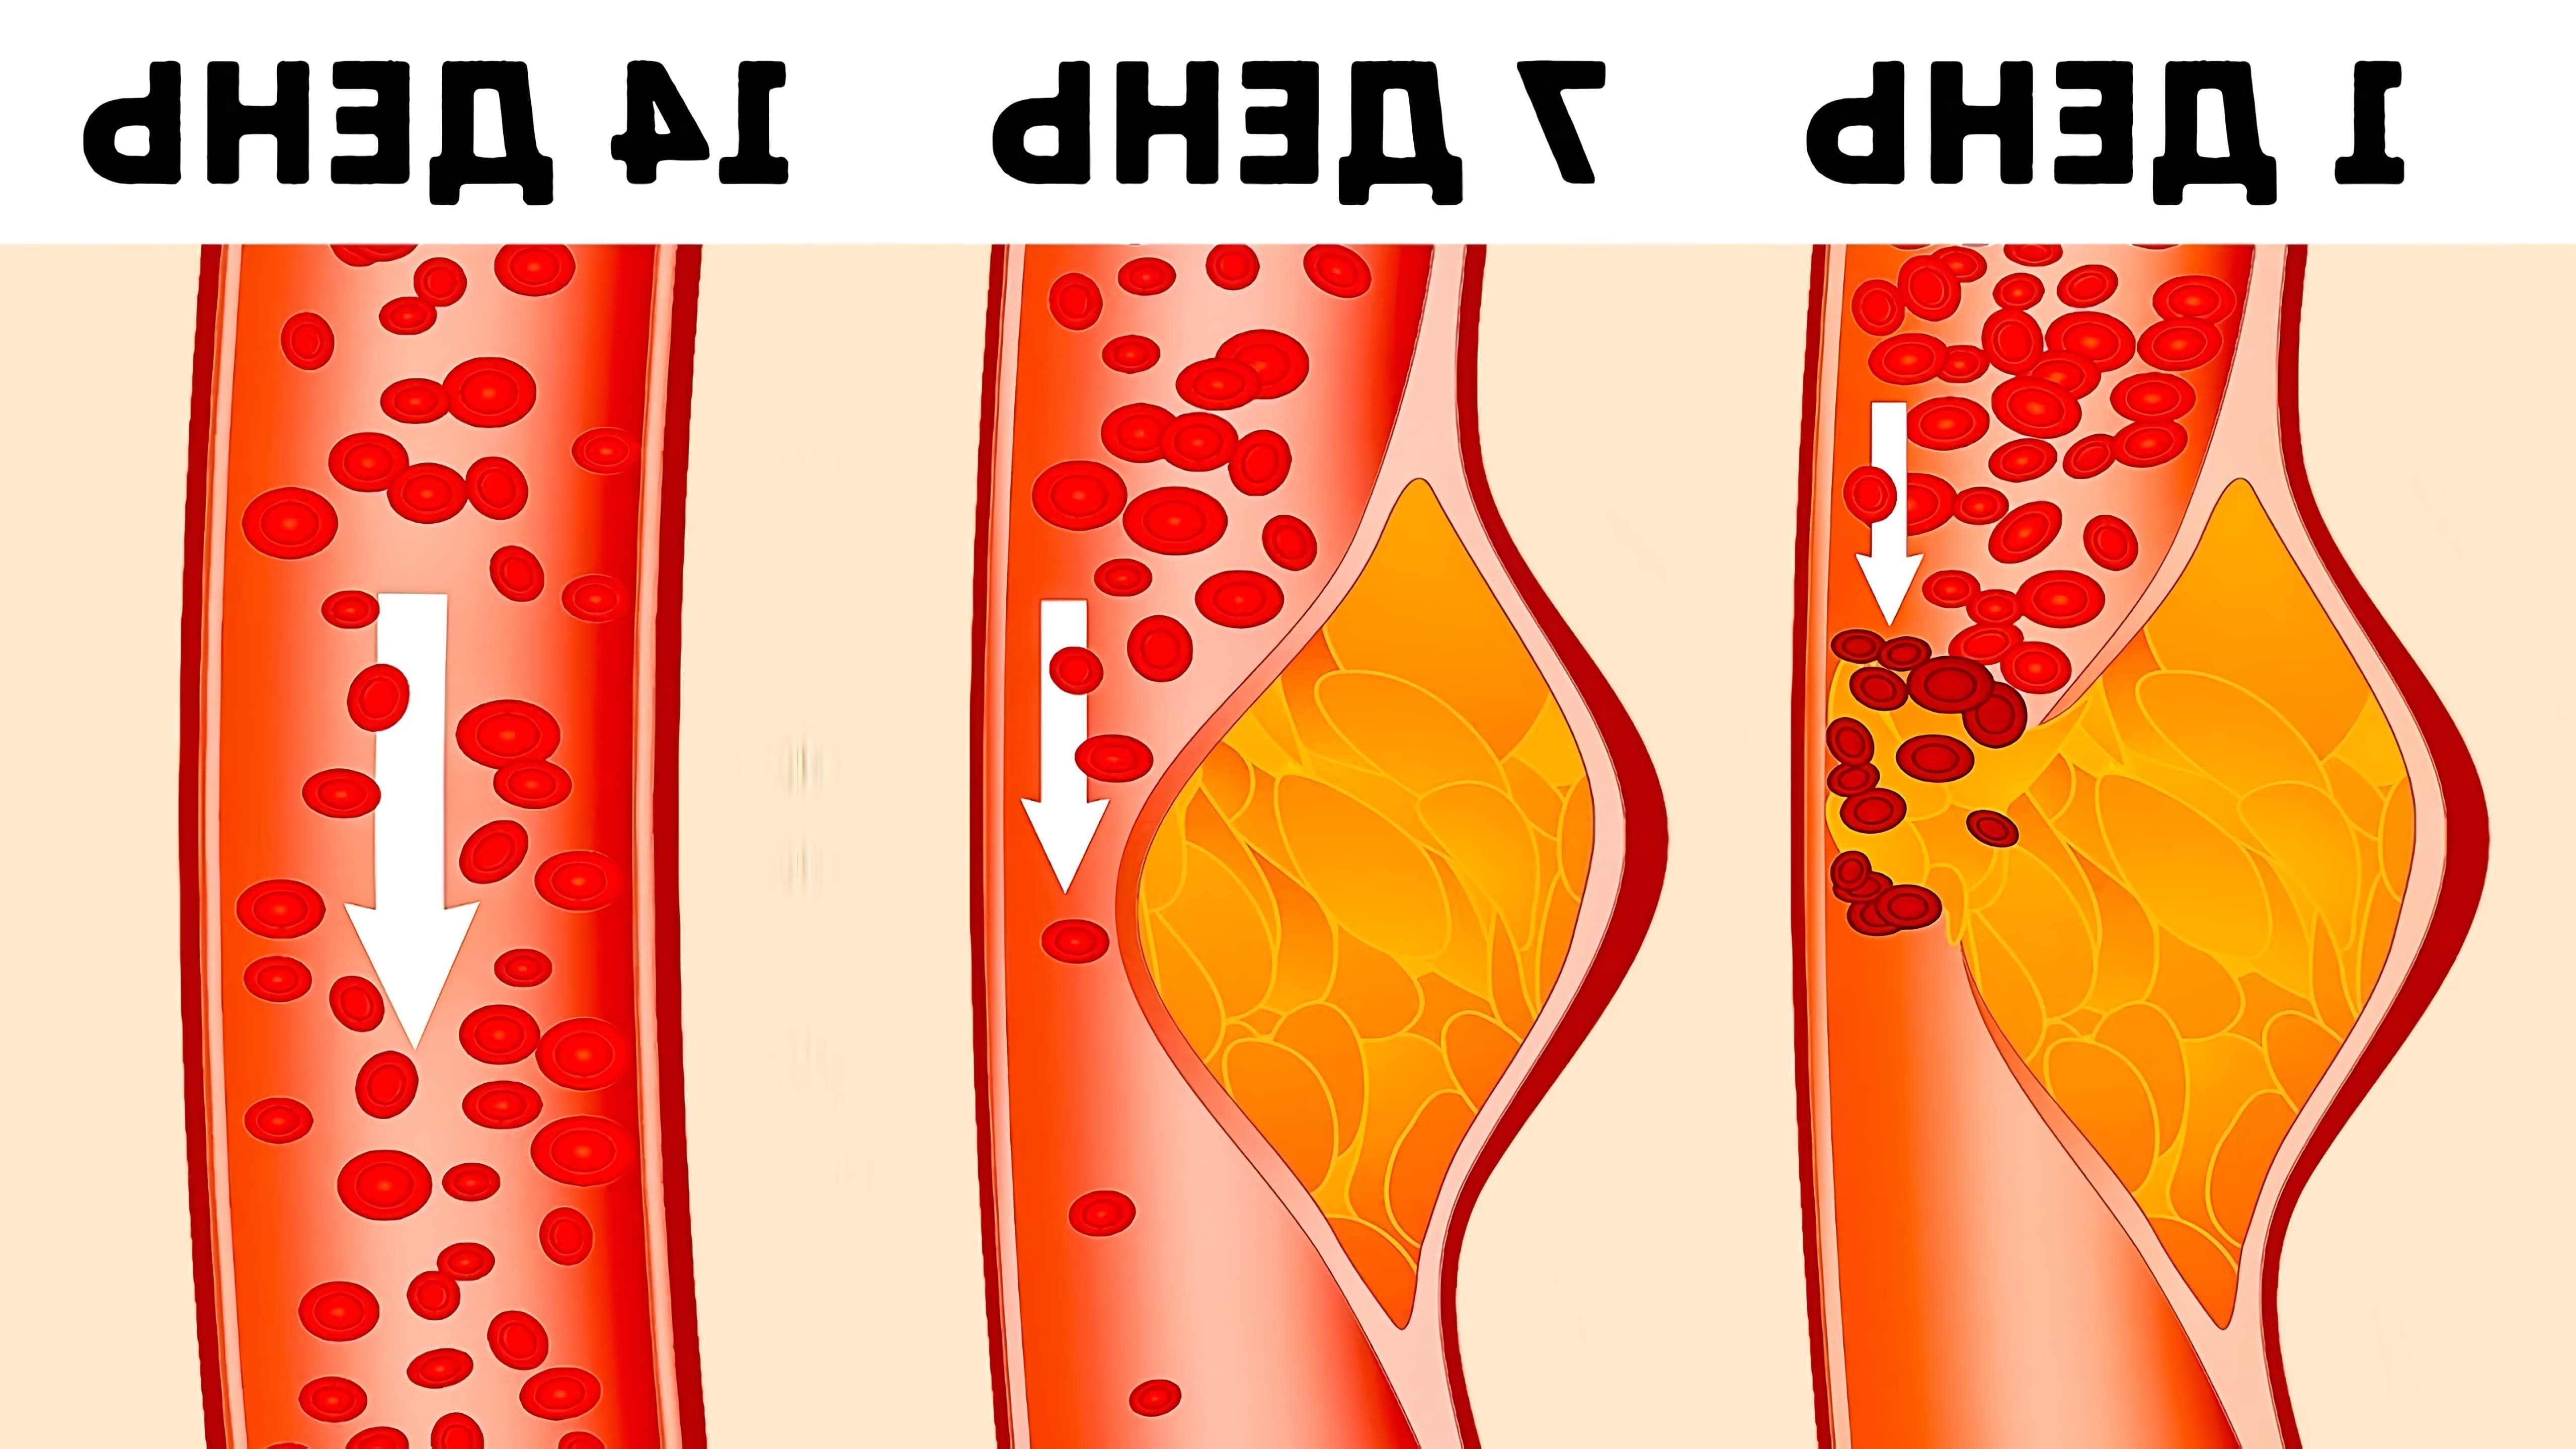 Диета DASH (Dietary Approaches to Stop Hypertension) - это план питания, разработанный специально для снижения артериального давления у гипертоников